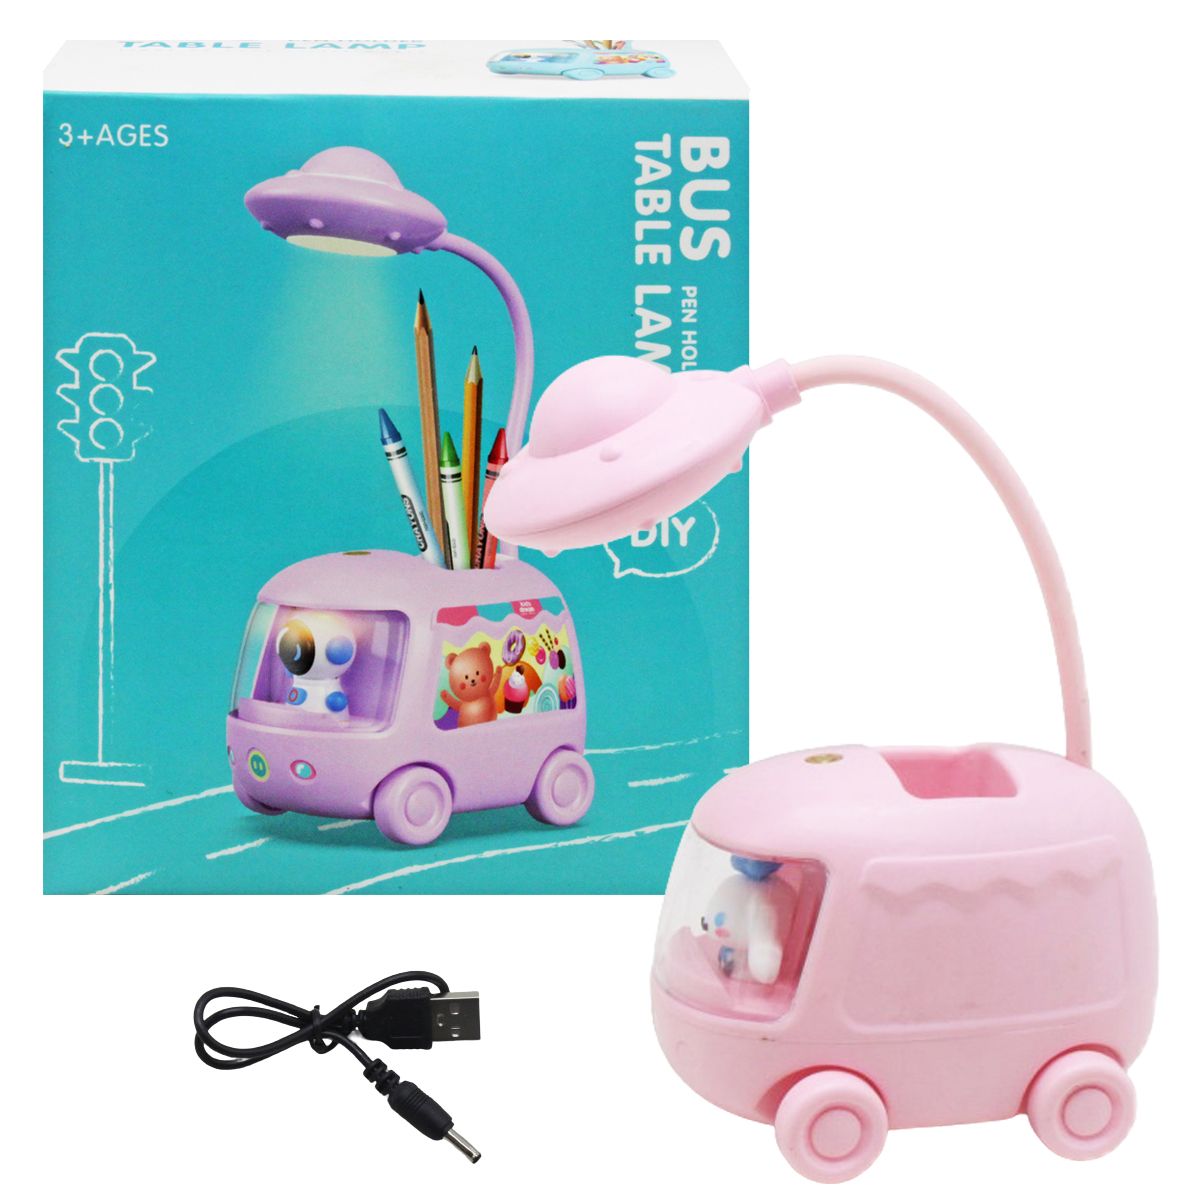 Детская настольная лампа "Bus", розовая